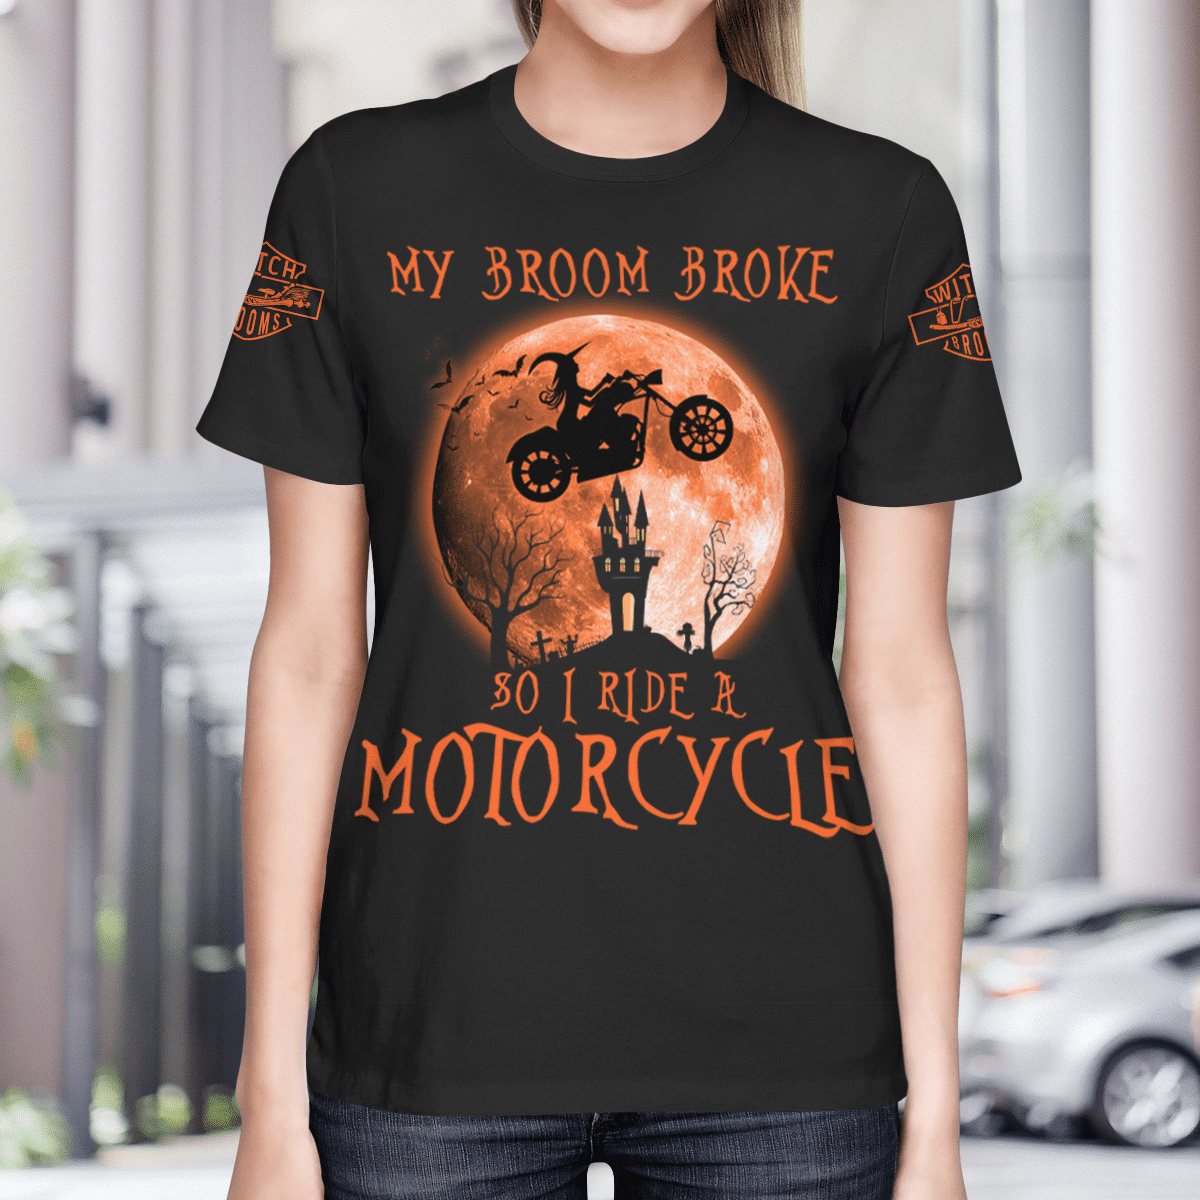 My Broom Broke So I Ride A Motorcycle